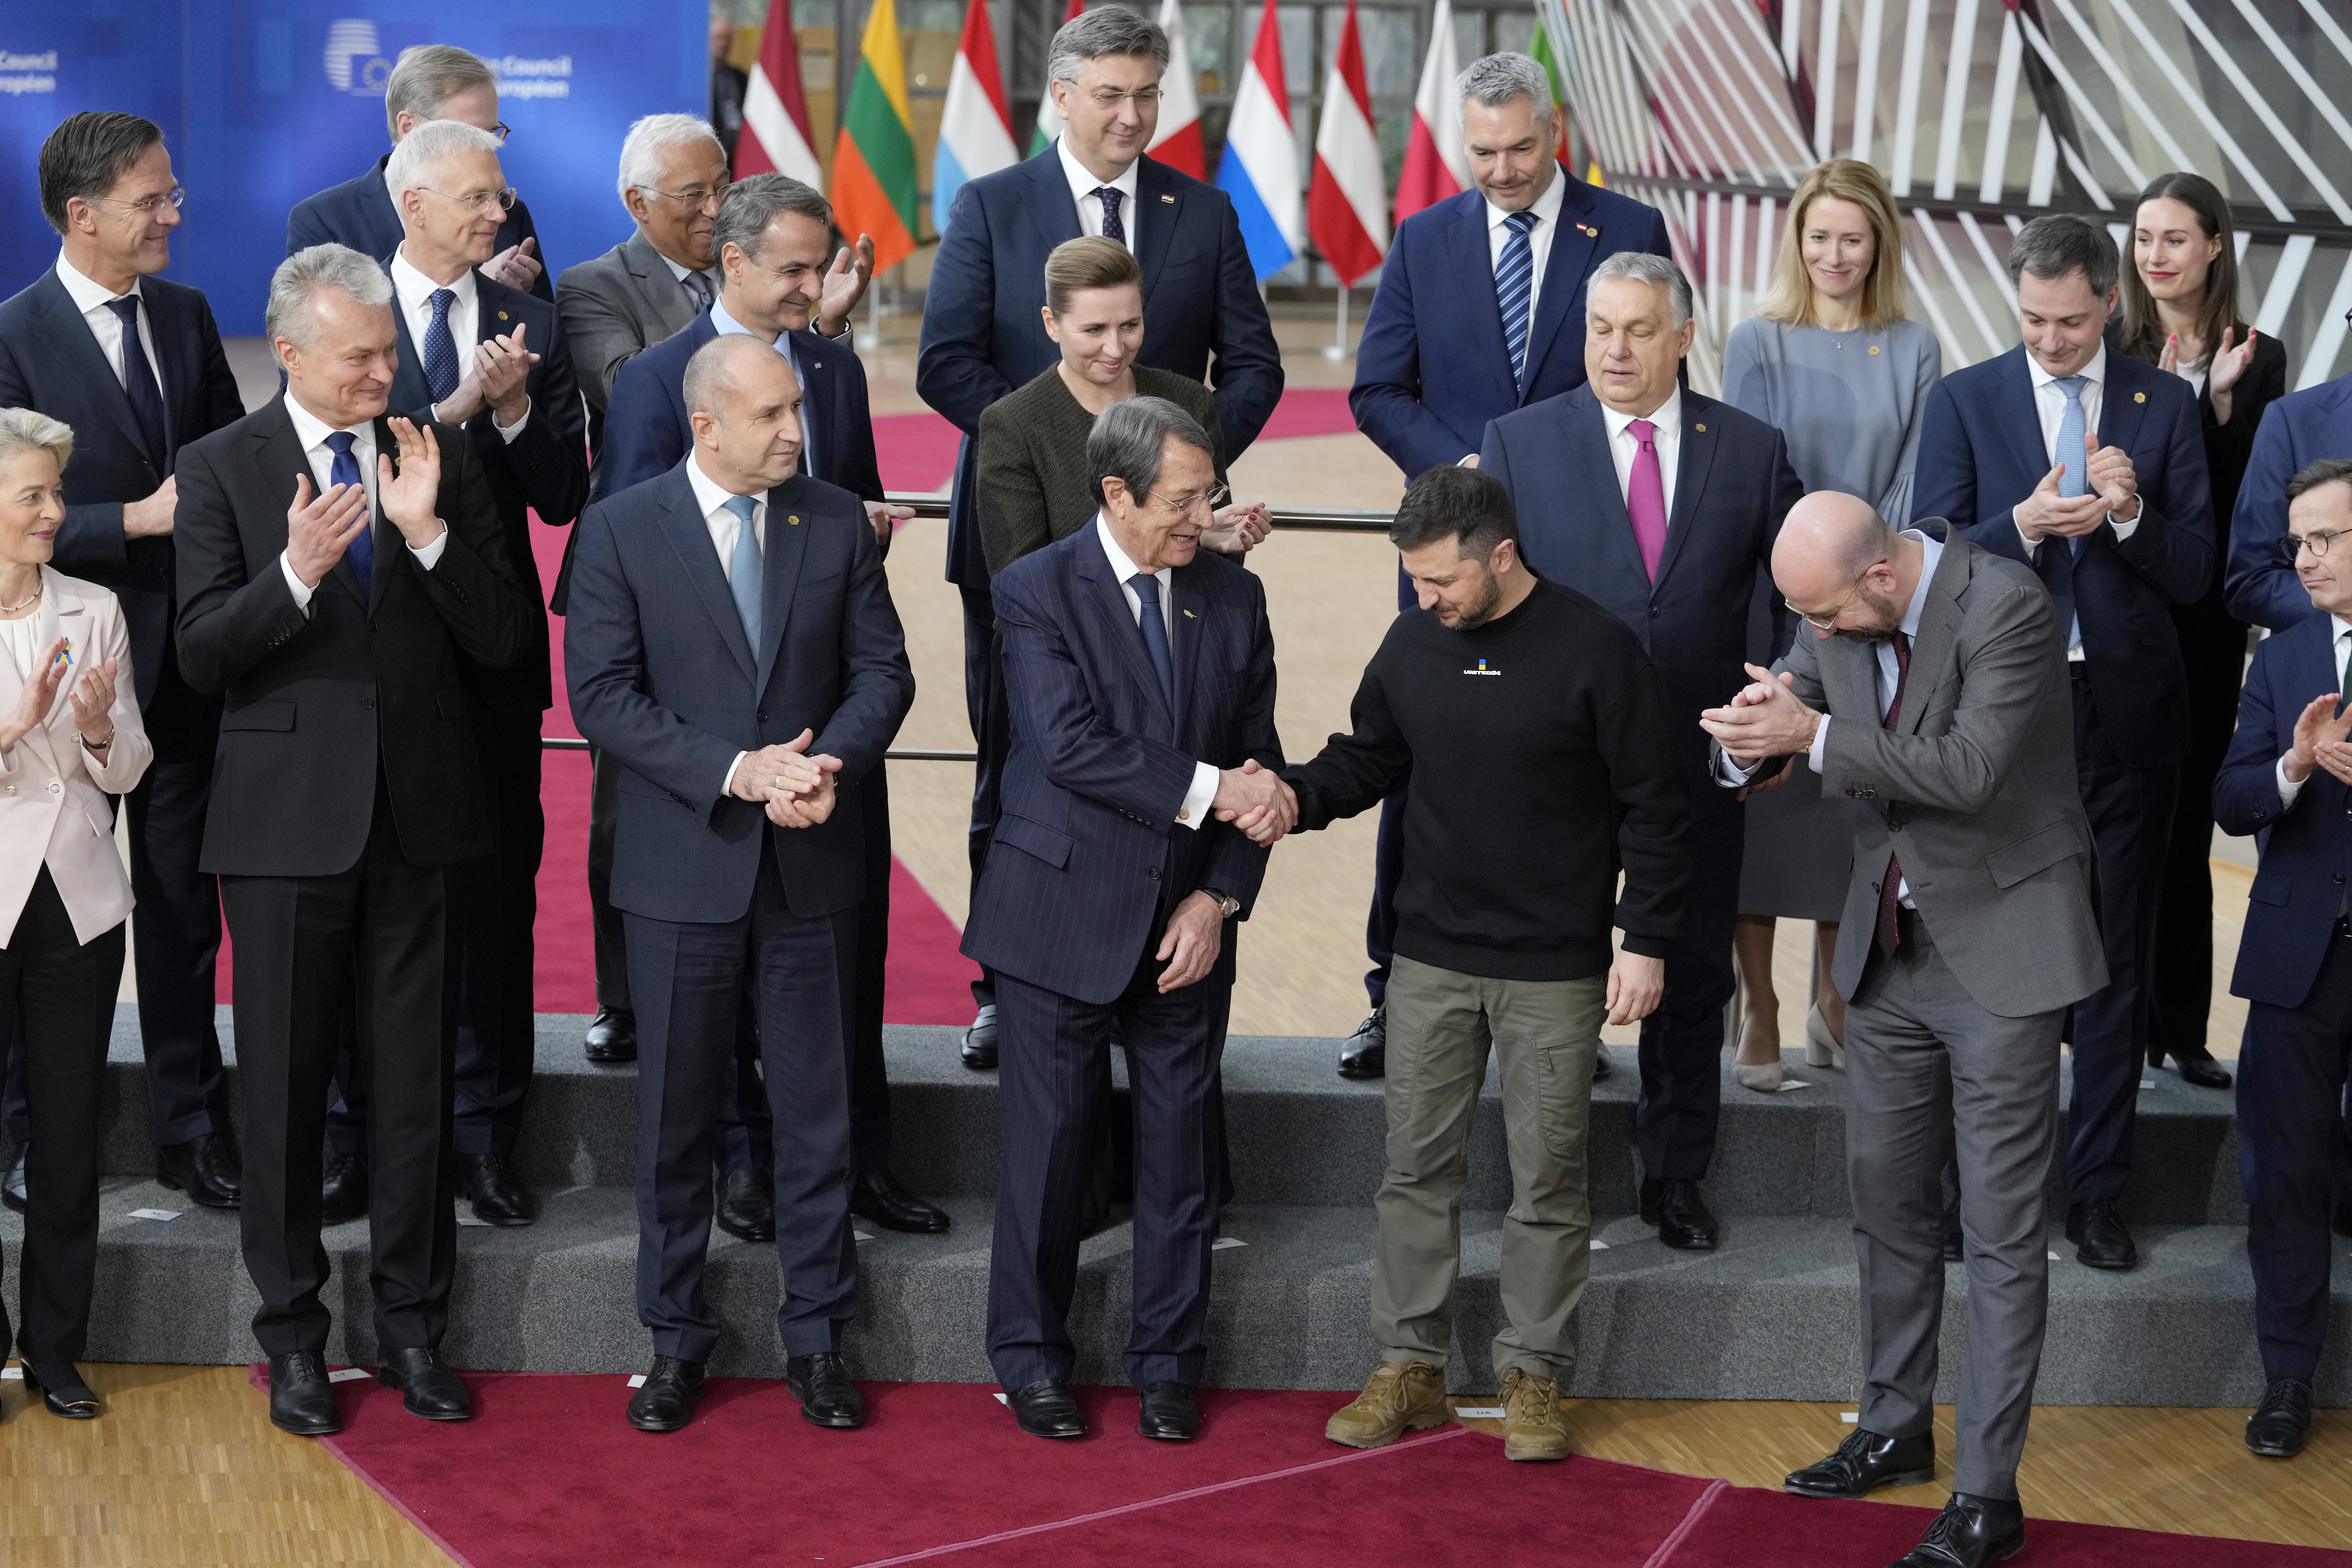 볼로디미르 젤렌스키 우크라이나 대통령이 9일(현지시간) 벨기에 브뤼셀에서 열린 유럽연합(EU) 특별 정상회의에서 다른 유럽연합 지도자들과 단체 사진을 찍고 있다. 2023.2.9 AP 연합뉴스